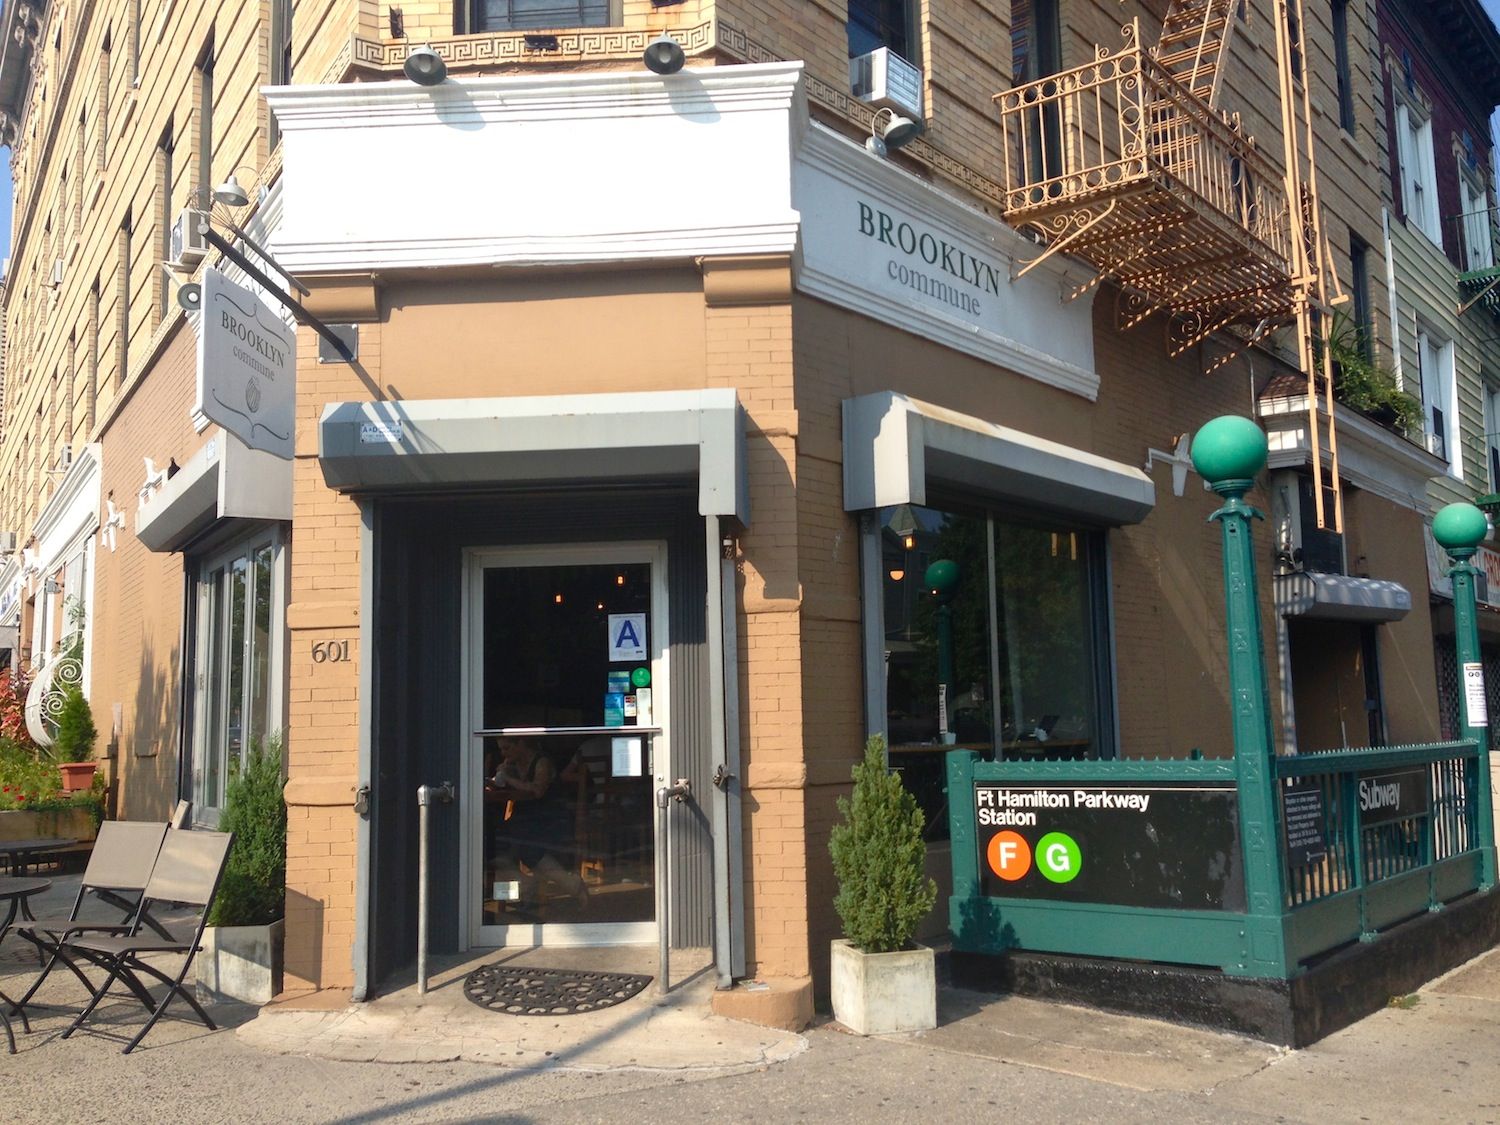 Brooklyn Commune Owners Opening New Restaurant Next Door